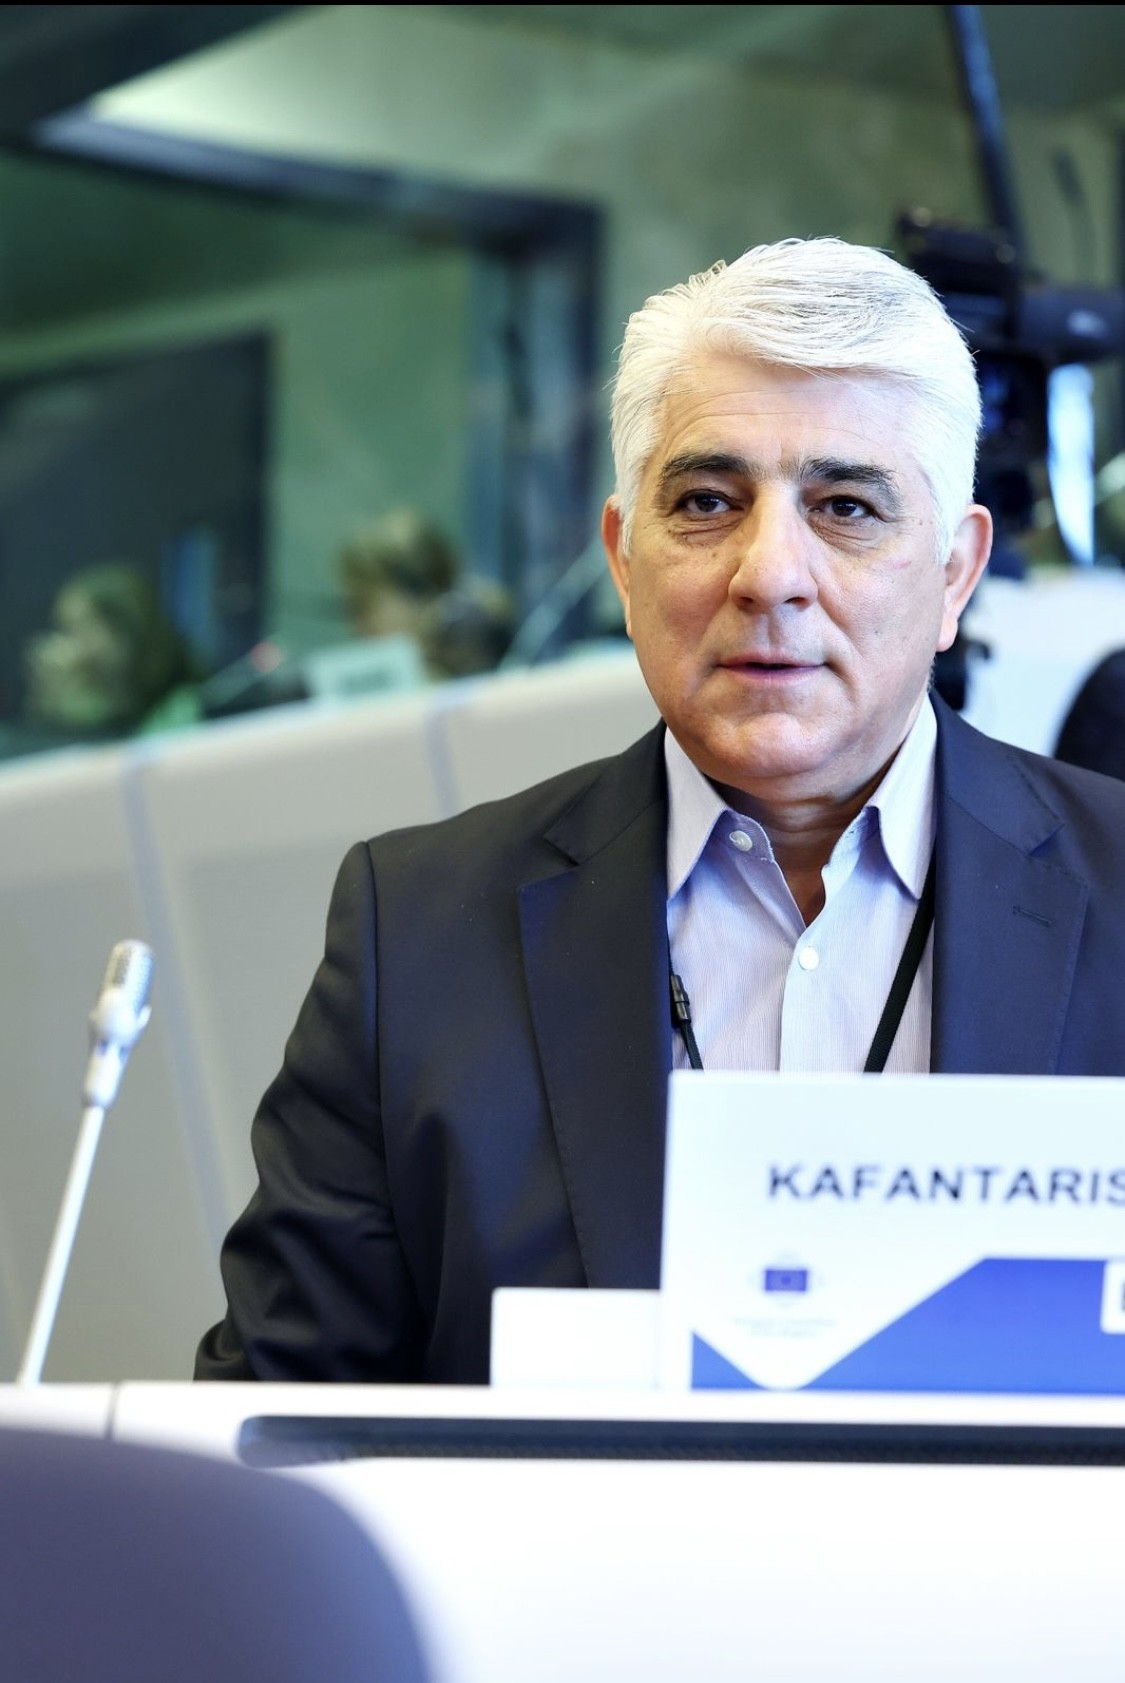 Δημήτρης Καφαντάρης: Όταν συμμετέχουμε στις συνεδριάσεις της Ε.τ.Π. ως «Εθνική Ελλάδος» οι επιτυχίες είναι σημαντικές